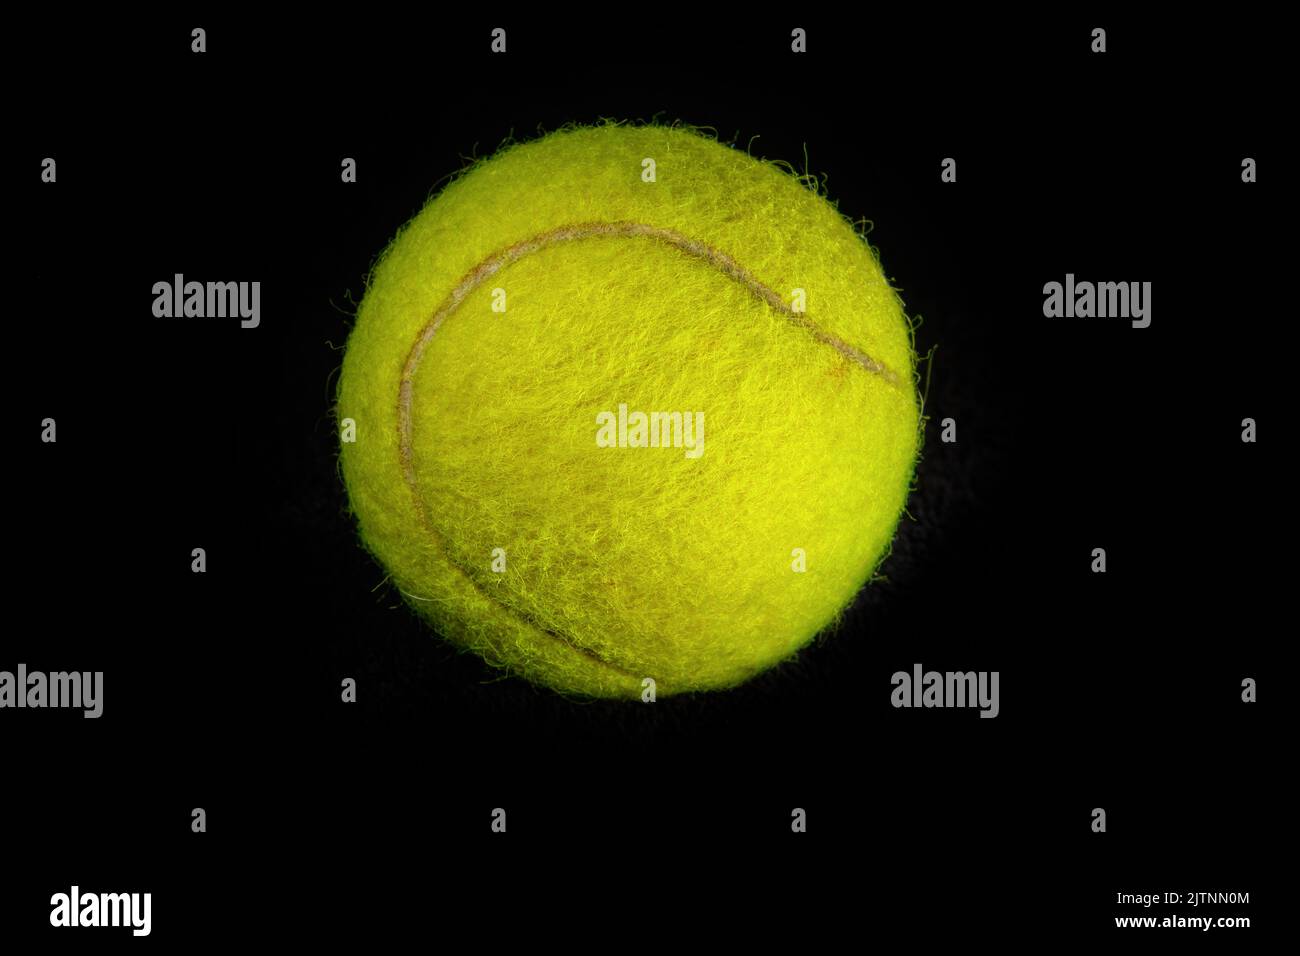 Balle de tennis jaune floue photographiée en gros plan sur fond noir foncé Banque D'Images